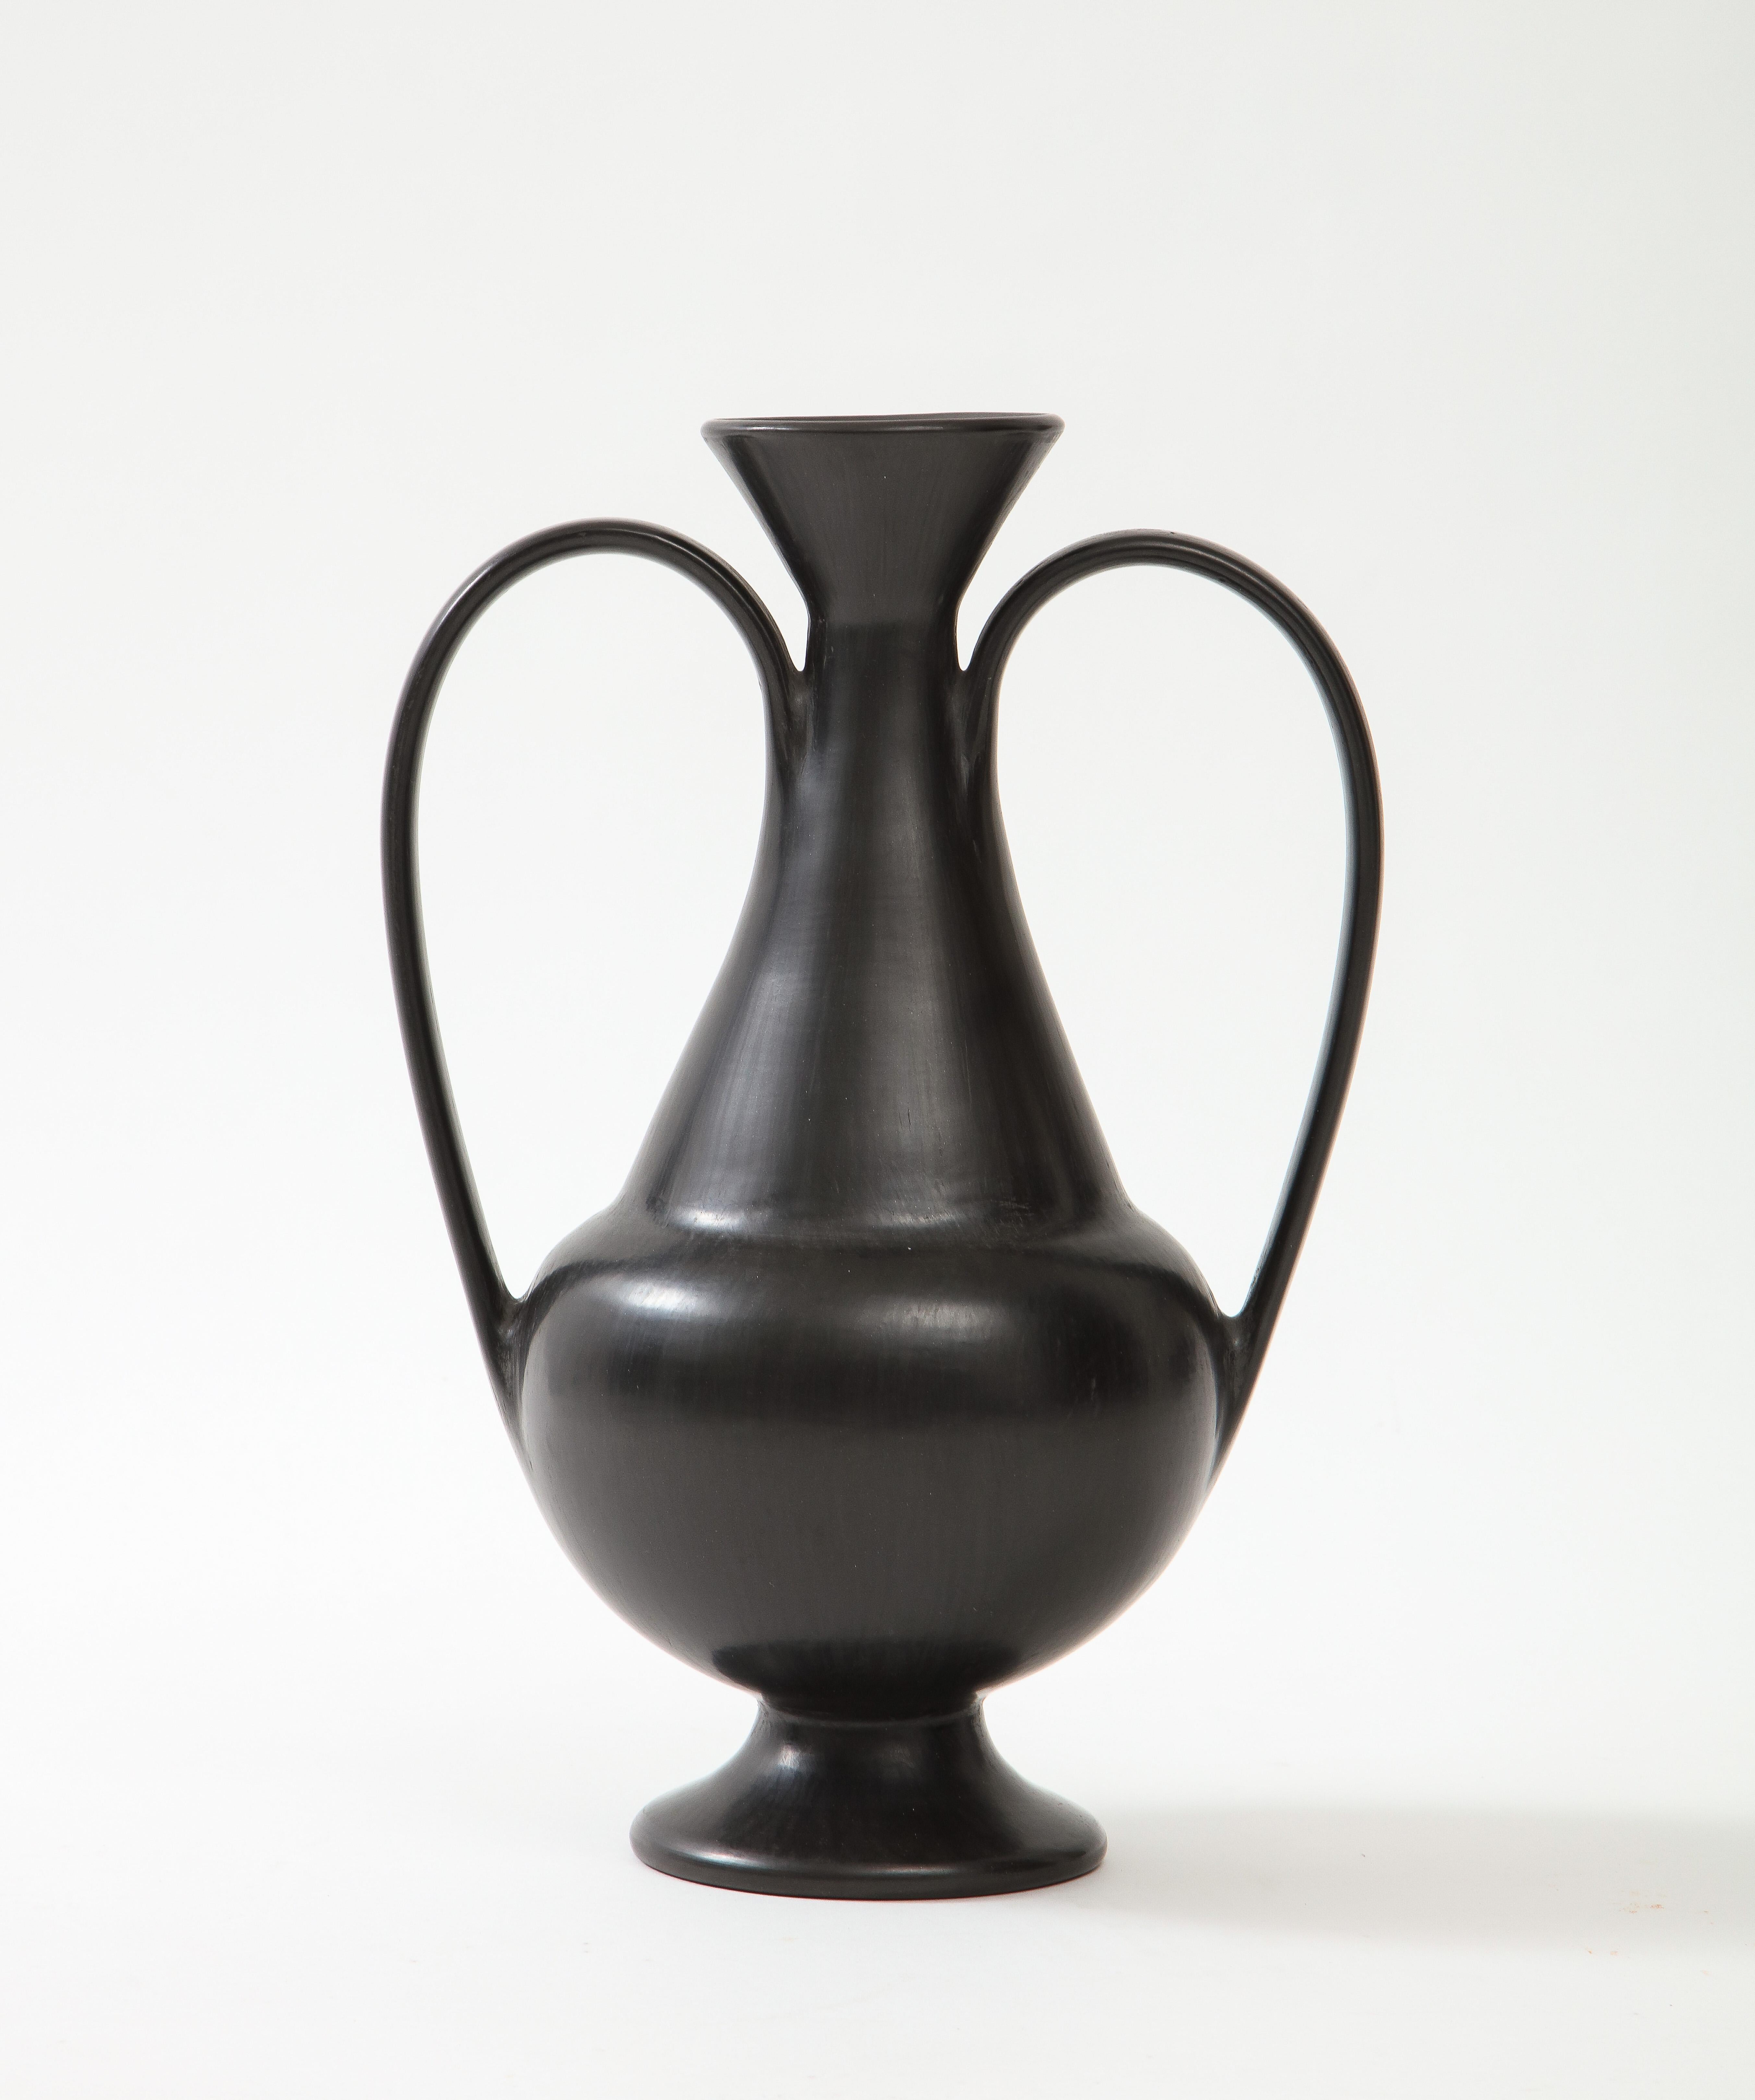 Gio Ponti et Carlo Alberto Rossi : rare vase classique en céramique Bucchero à deux anses, Italie, vers 1951. Signé C. A. Rossi sous la base. 

La poterie de Bucchero est une poterie étrusque en terre cuite répandue dans l'Italie préromaine,